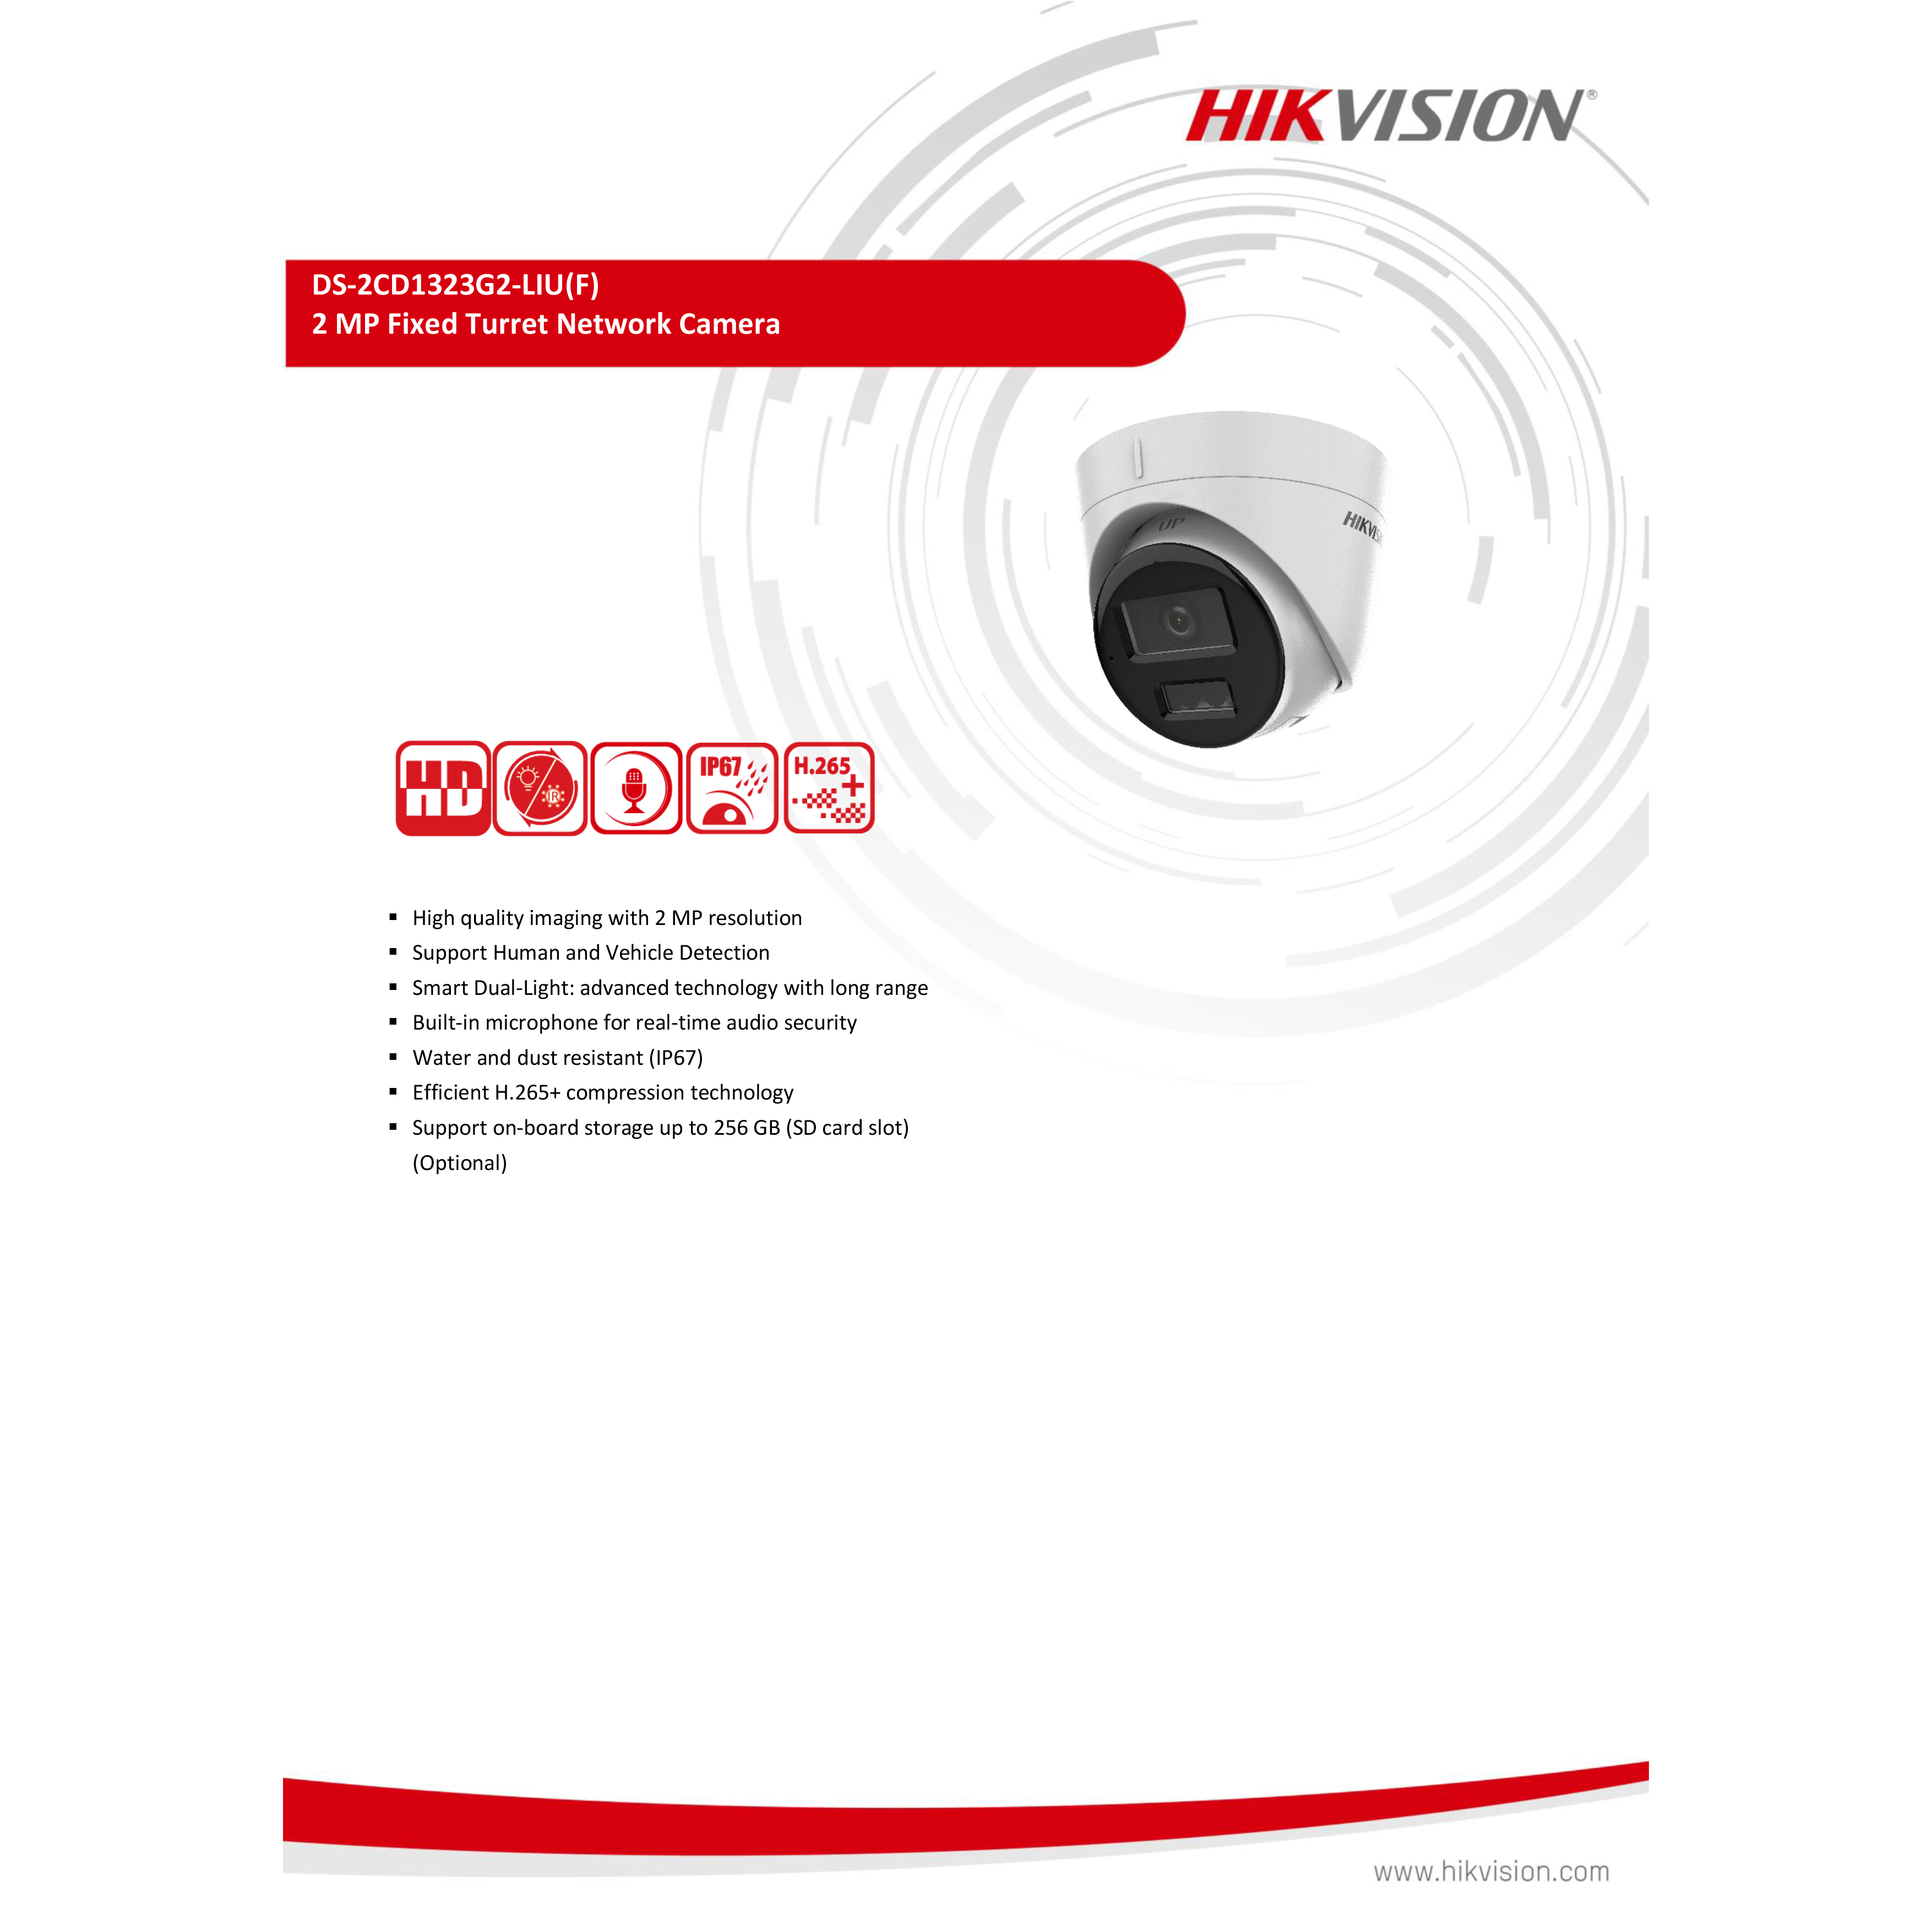 hikvision-ds-2cd1323g2-liu-4-mm-กล้องวงจรปิดระบบ-ip-2-mp-มีไมค์ในตัว-เลือกปรับโหมดเป็นภาพสี-24-ชม-หรือขาวดำได้